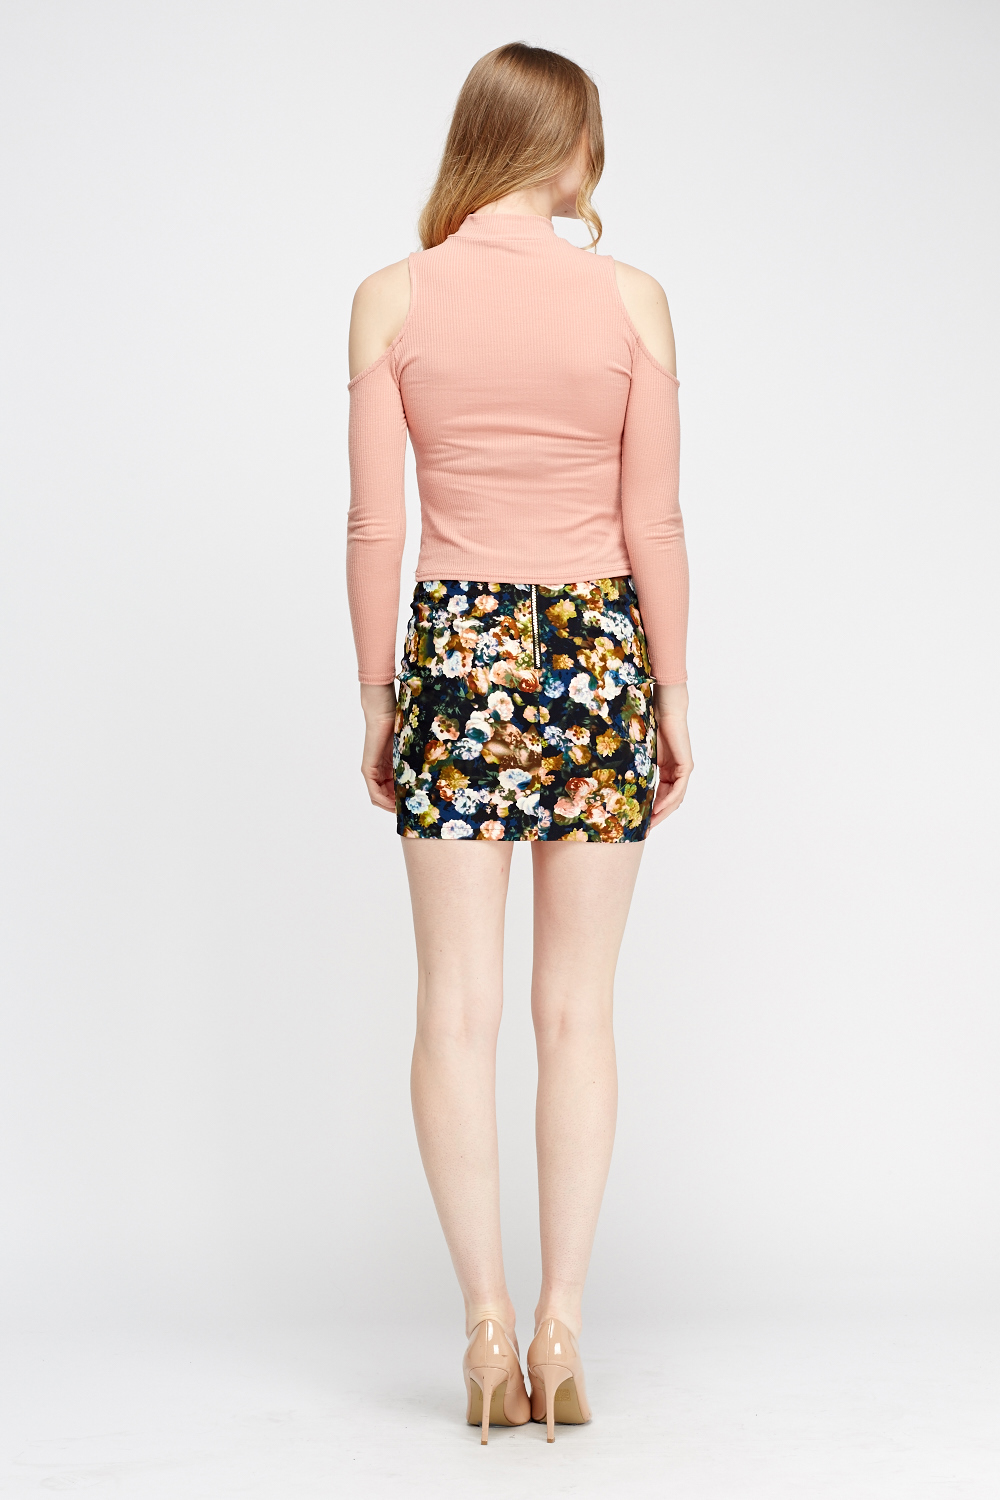 Floral Print Mini Skirt - Just $3